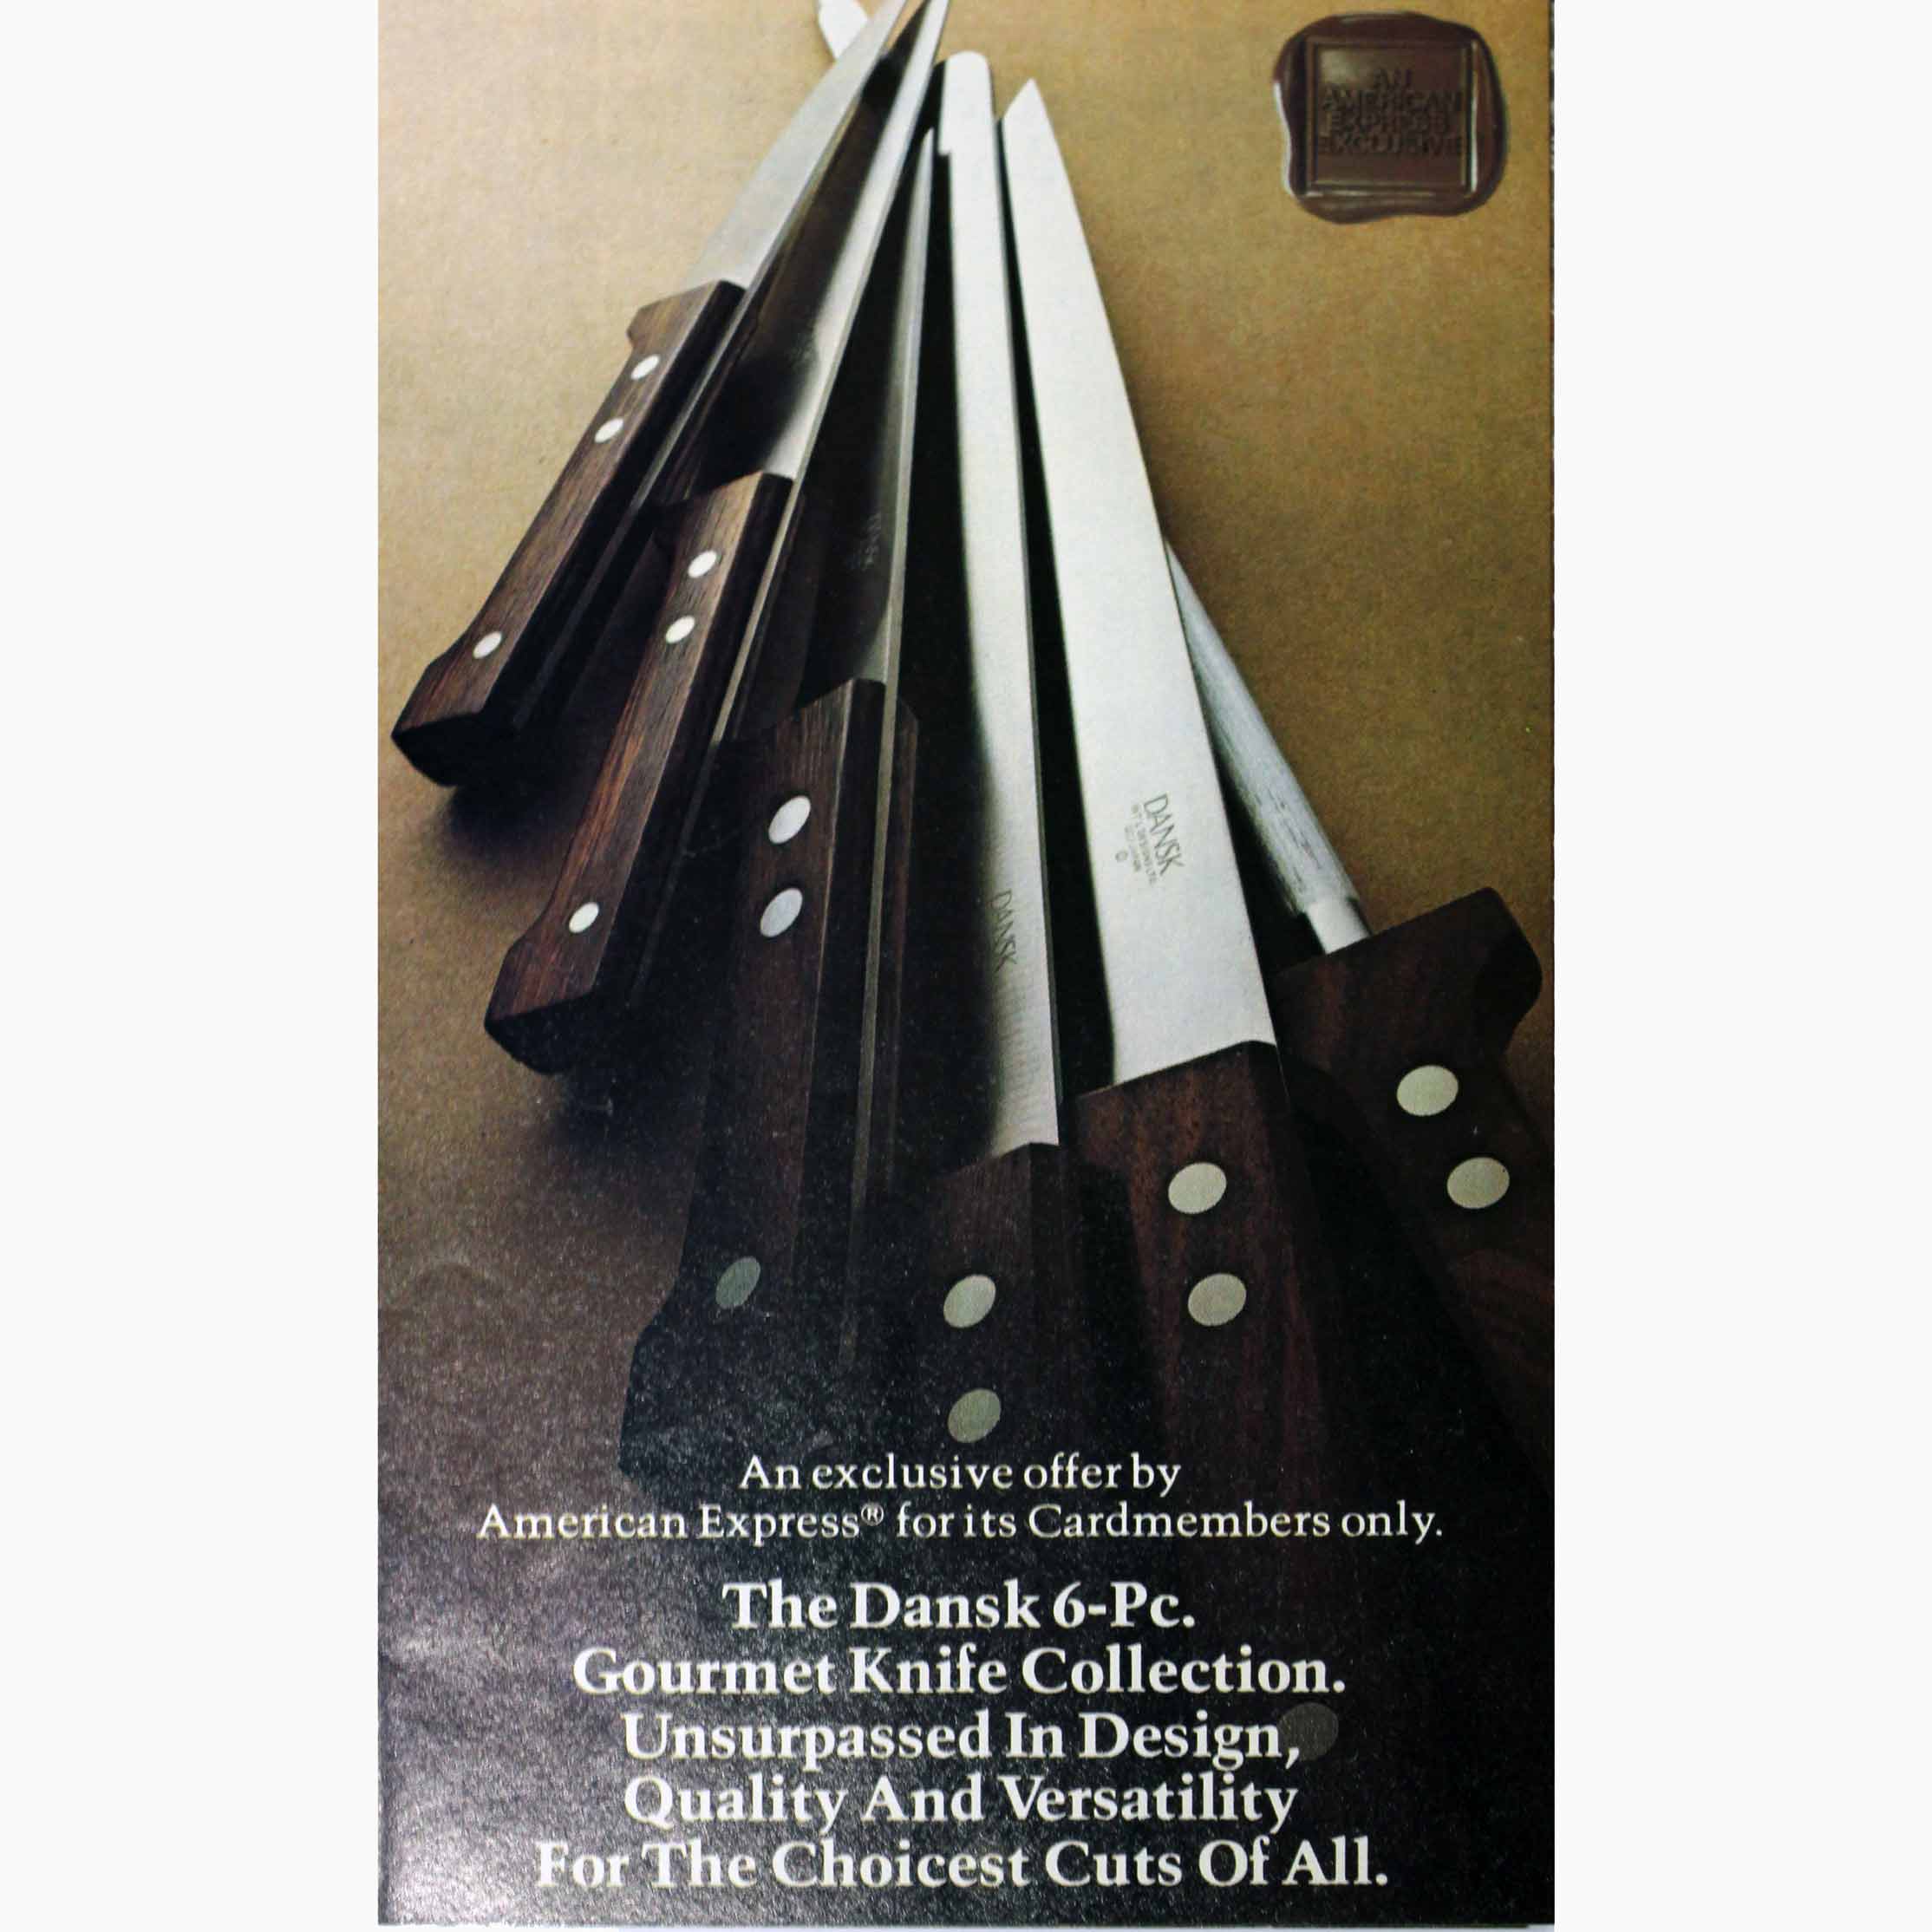 Dansk Gourmet Designs Ltd, Knivkollektion, annons, 1974